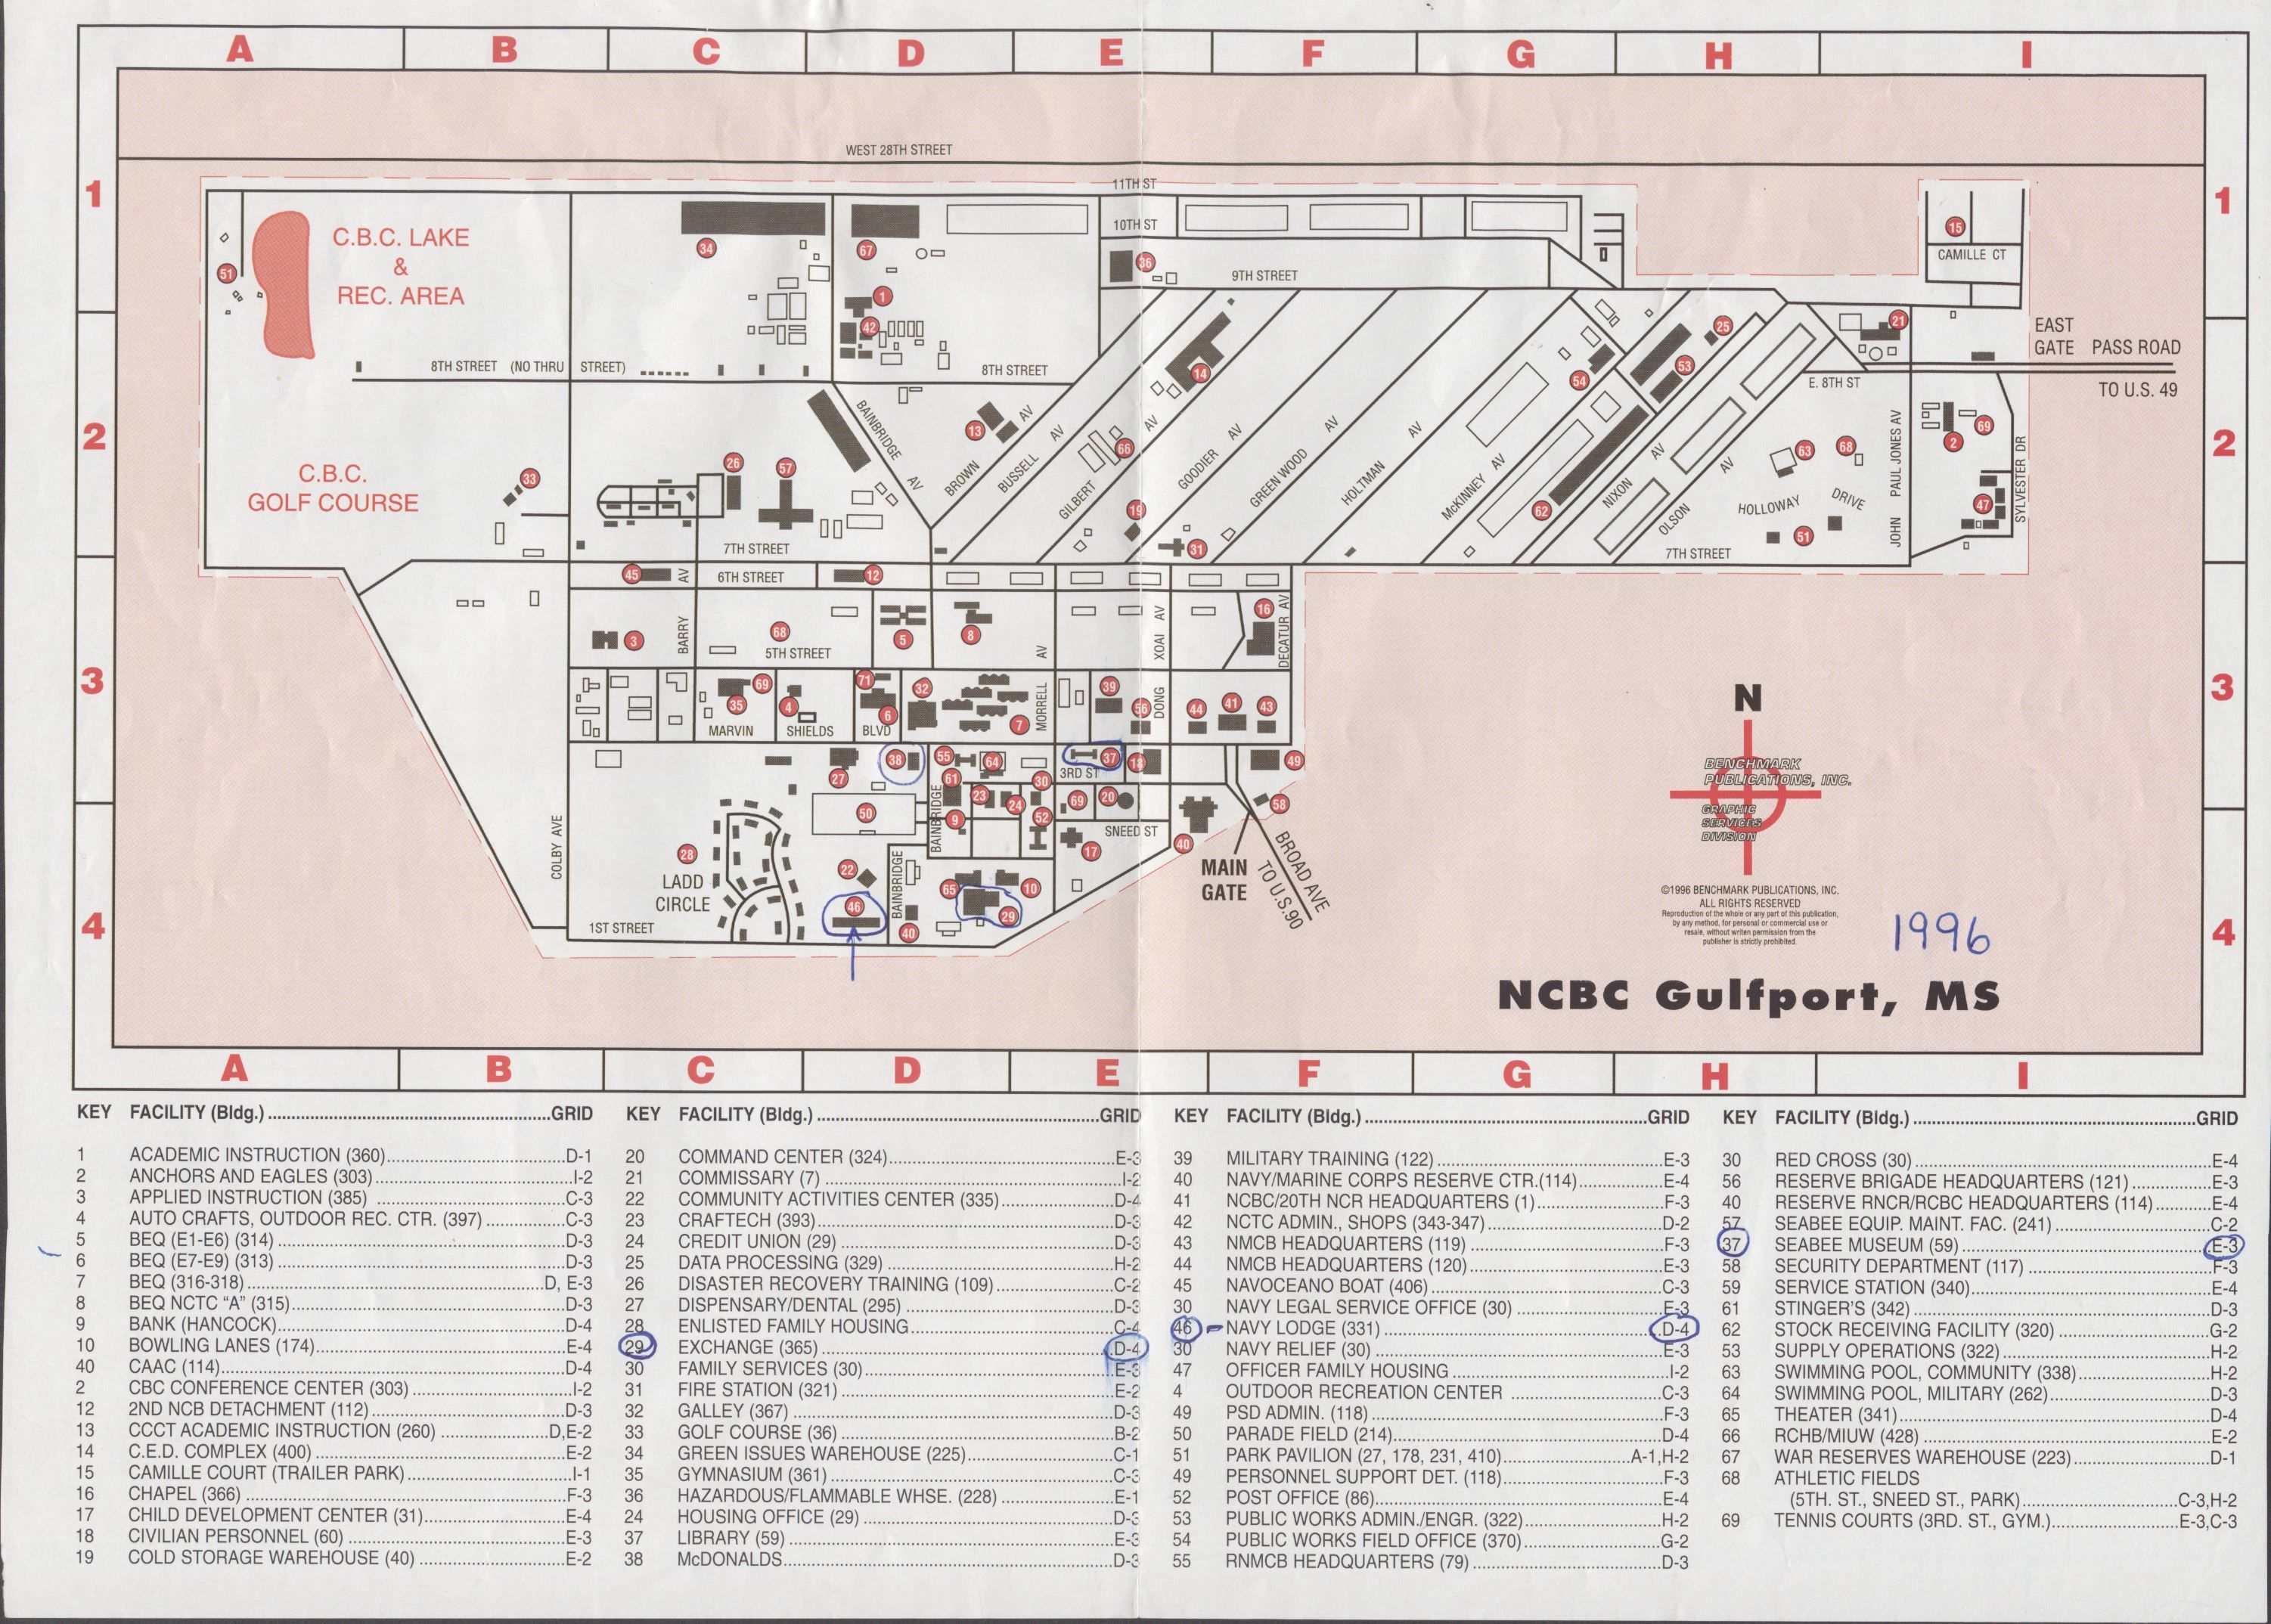 Gulfport, MS - 1996 Base Map